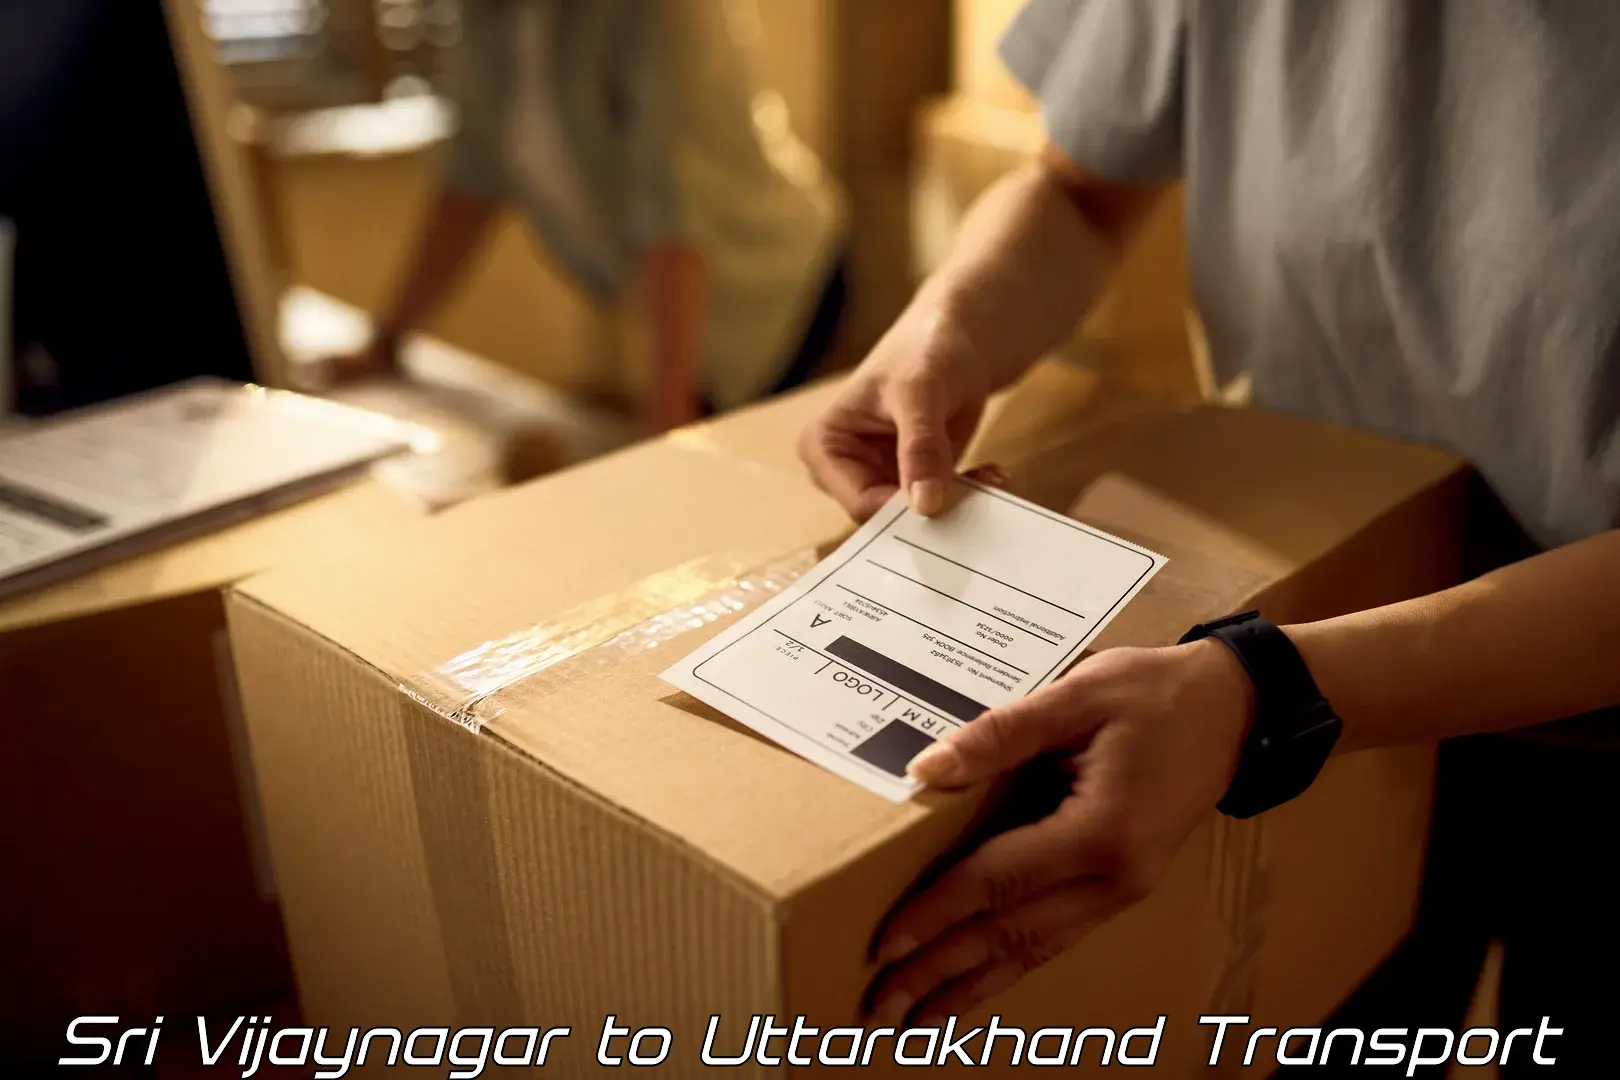 Transport in sharing Sri Vijaynagar to Almora